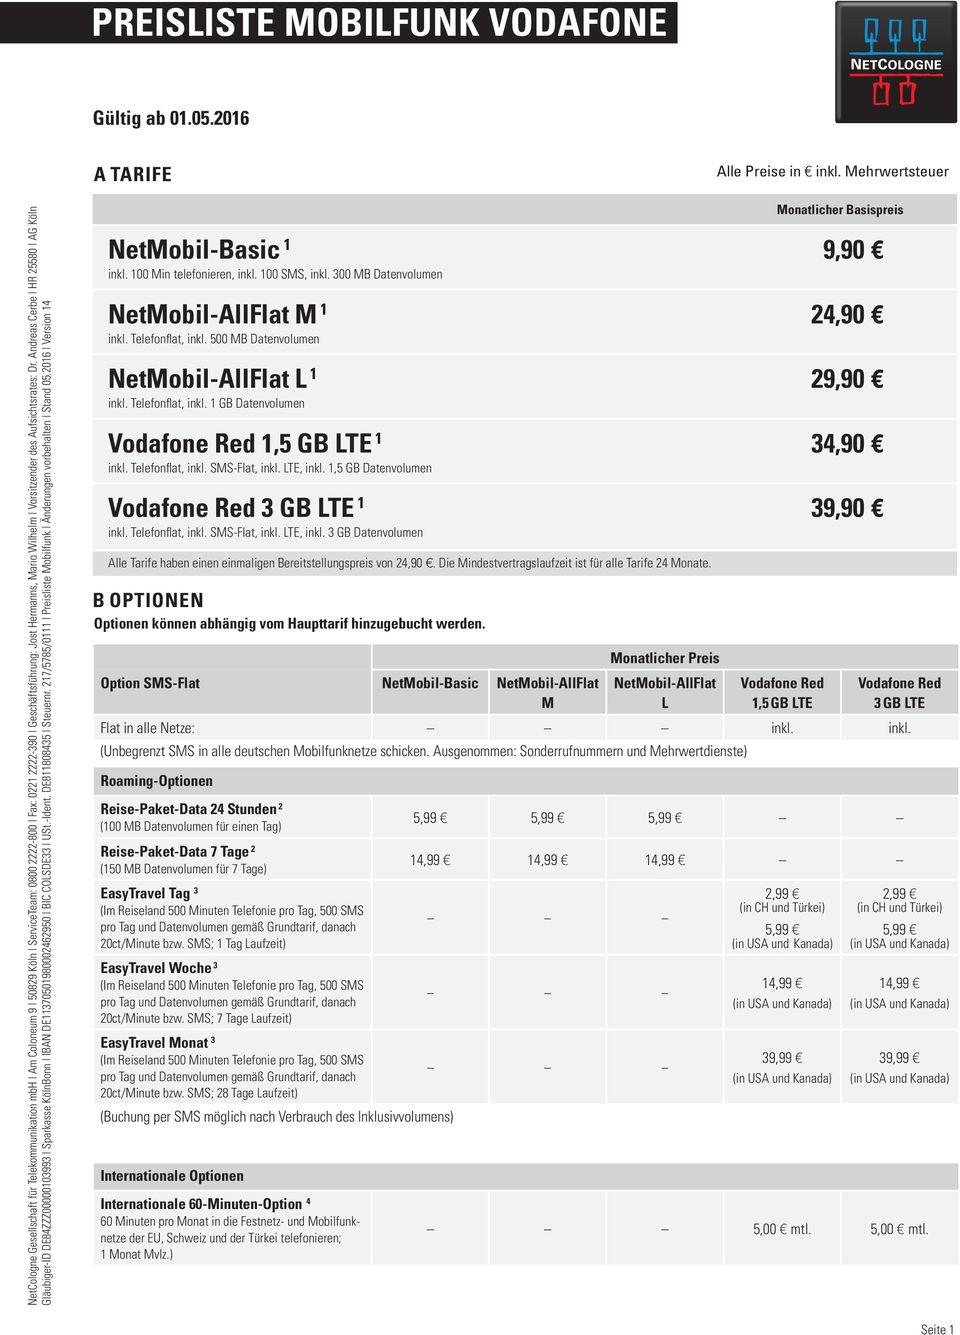 Aufsichtsrates: Dr. Andreas Cerbe HR 25580 AG Köln NetMobil-Basic 1 inkl. 100 Min telefonieren, inkl. 100 SMS, inkl. 300 MB Datenvolumen NetMobil-AllFlat M 1 inkl. Telefonflat, inkl.